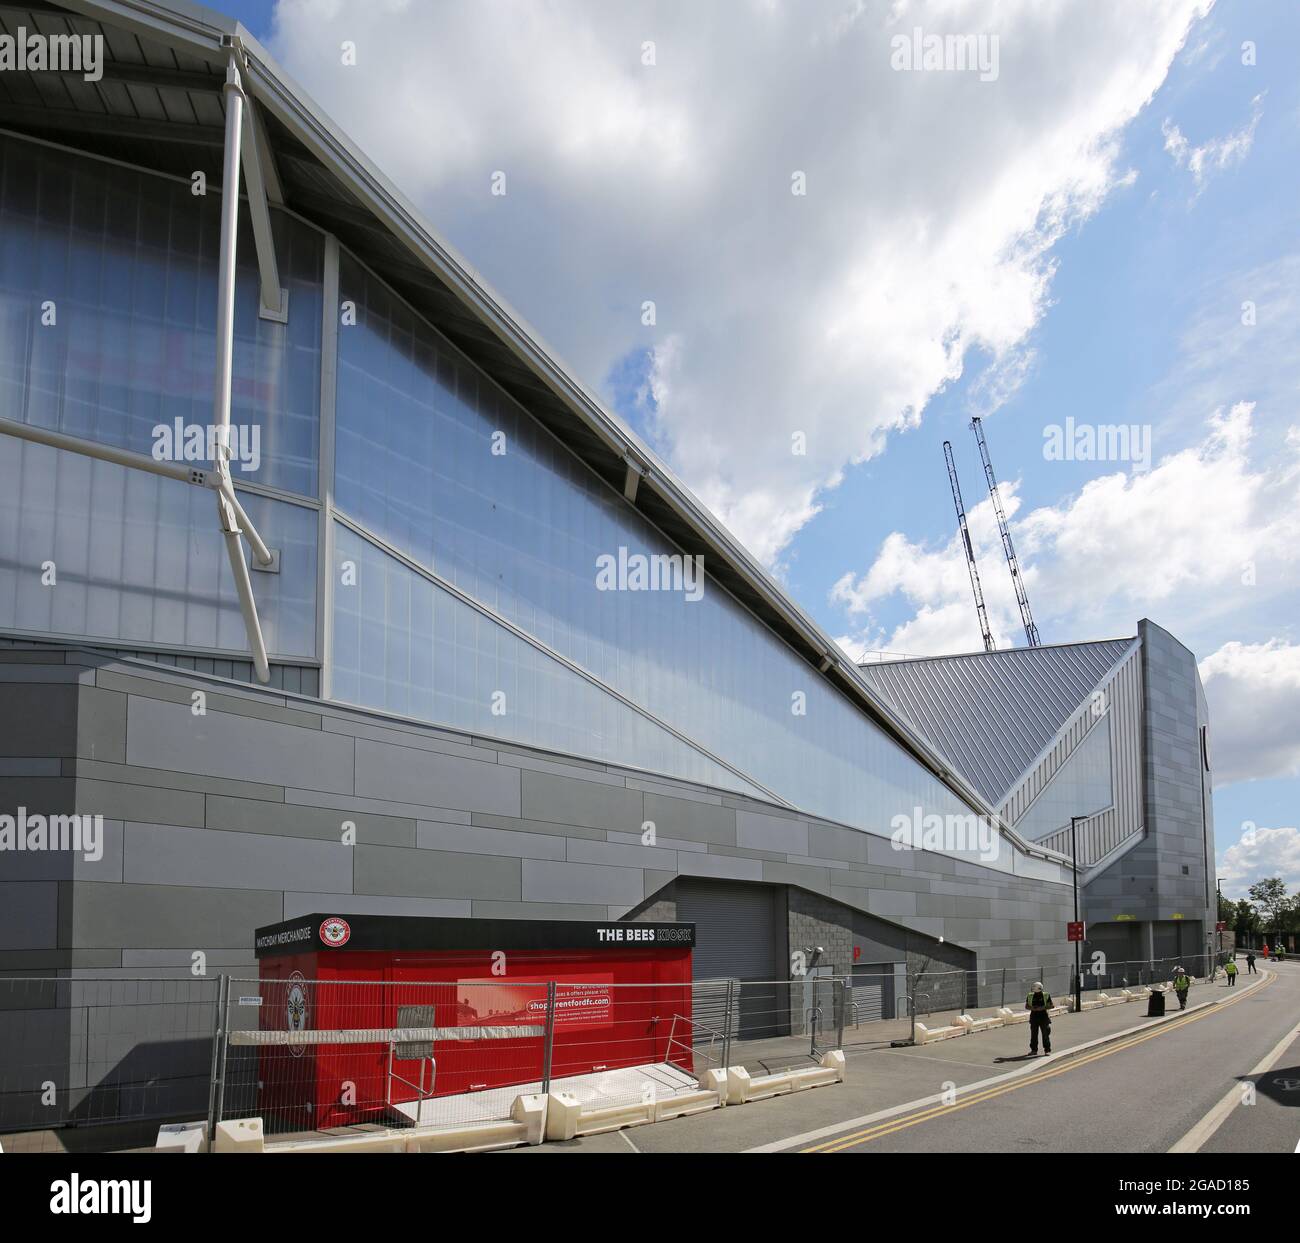 Das neue Stadion des Brentford Football Club in der Nähe der Kew Bridge im Westen Londons. Außerdem ist hier der Irish Rugby Club London beheimatet. Entworfen von AFL Architects. Stockfoto